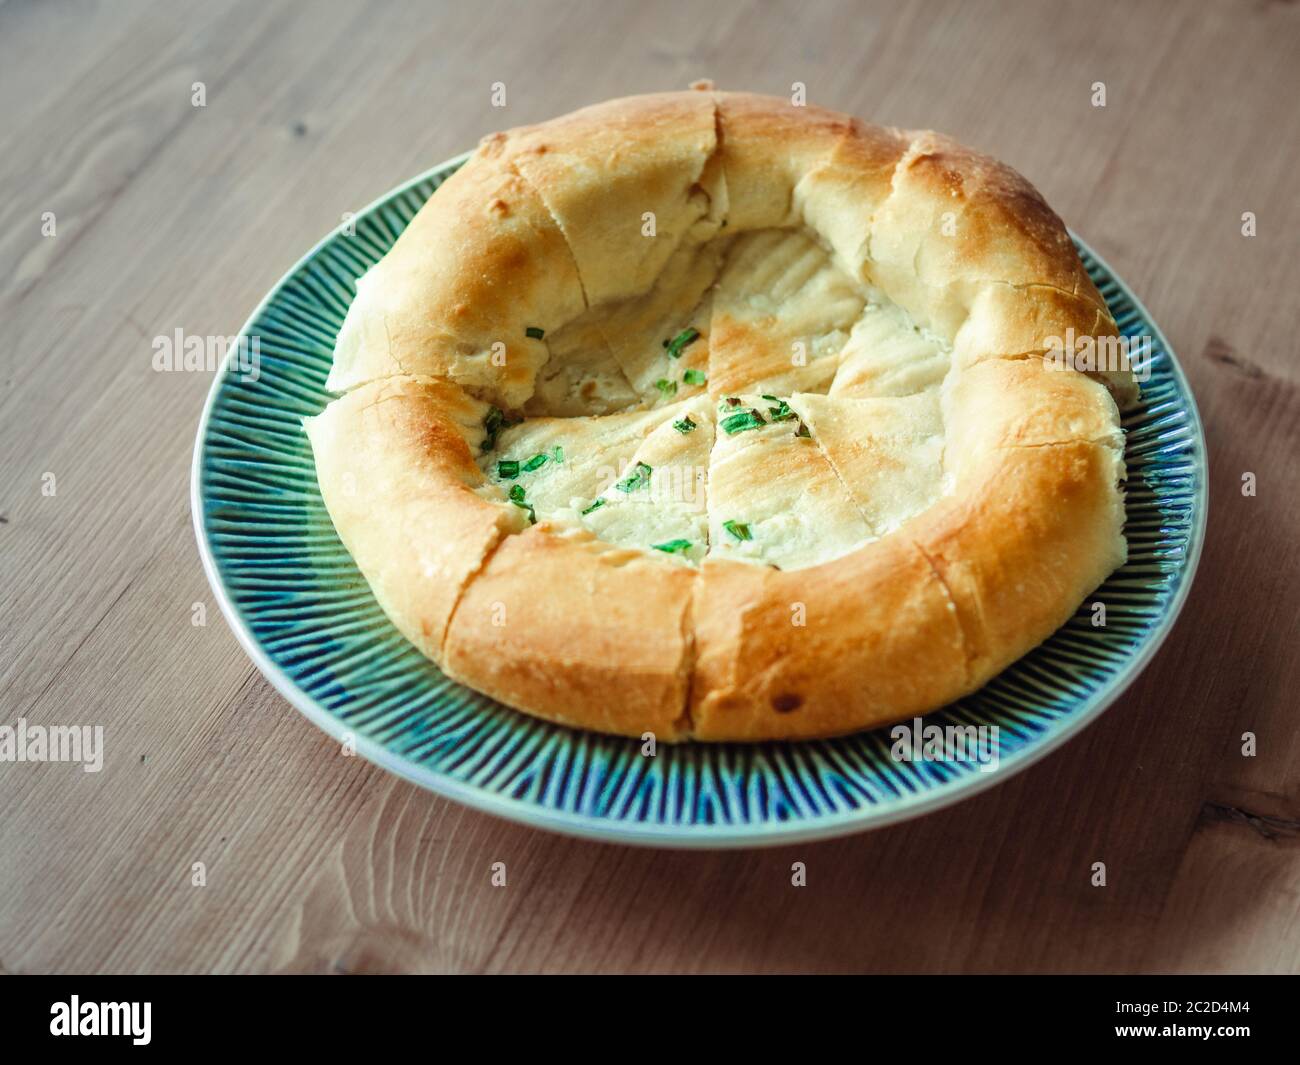 tasty tandoor baked bread on plate Stock Photo